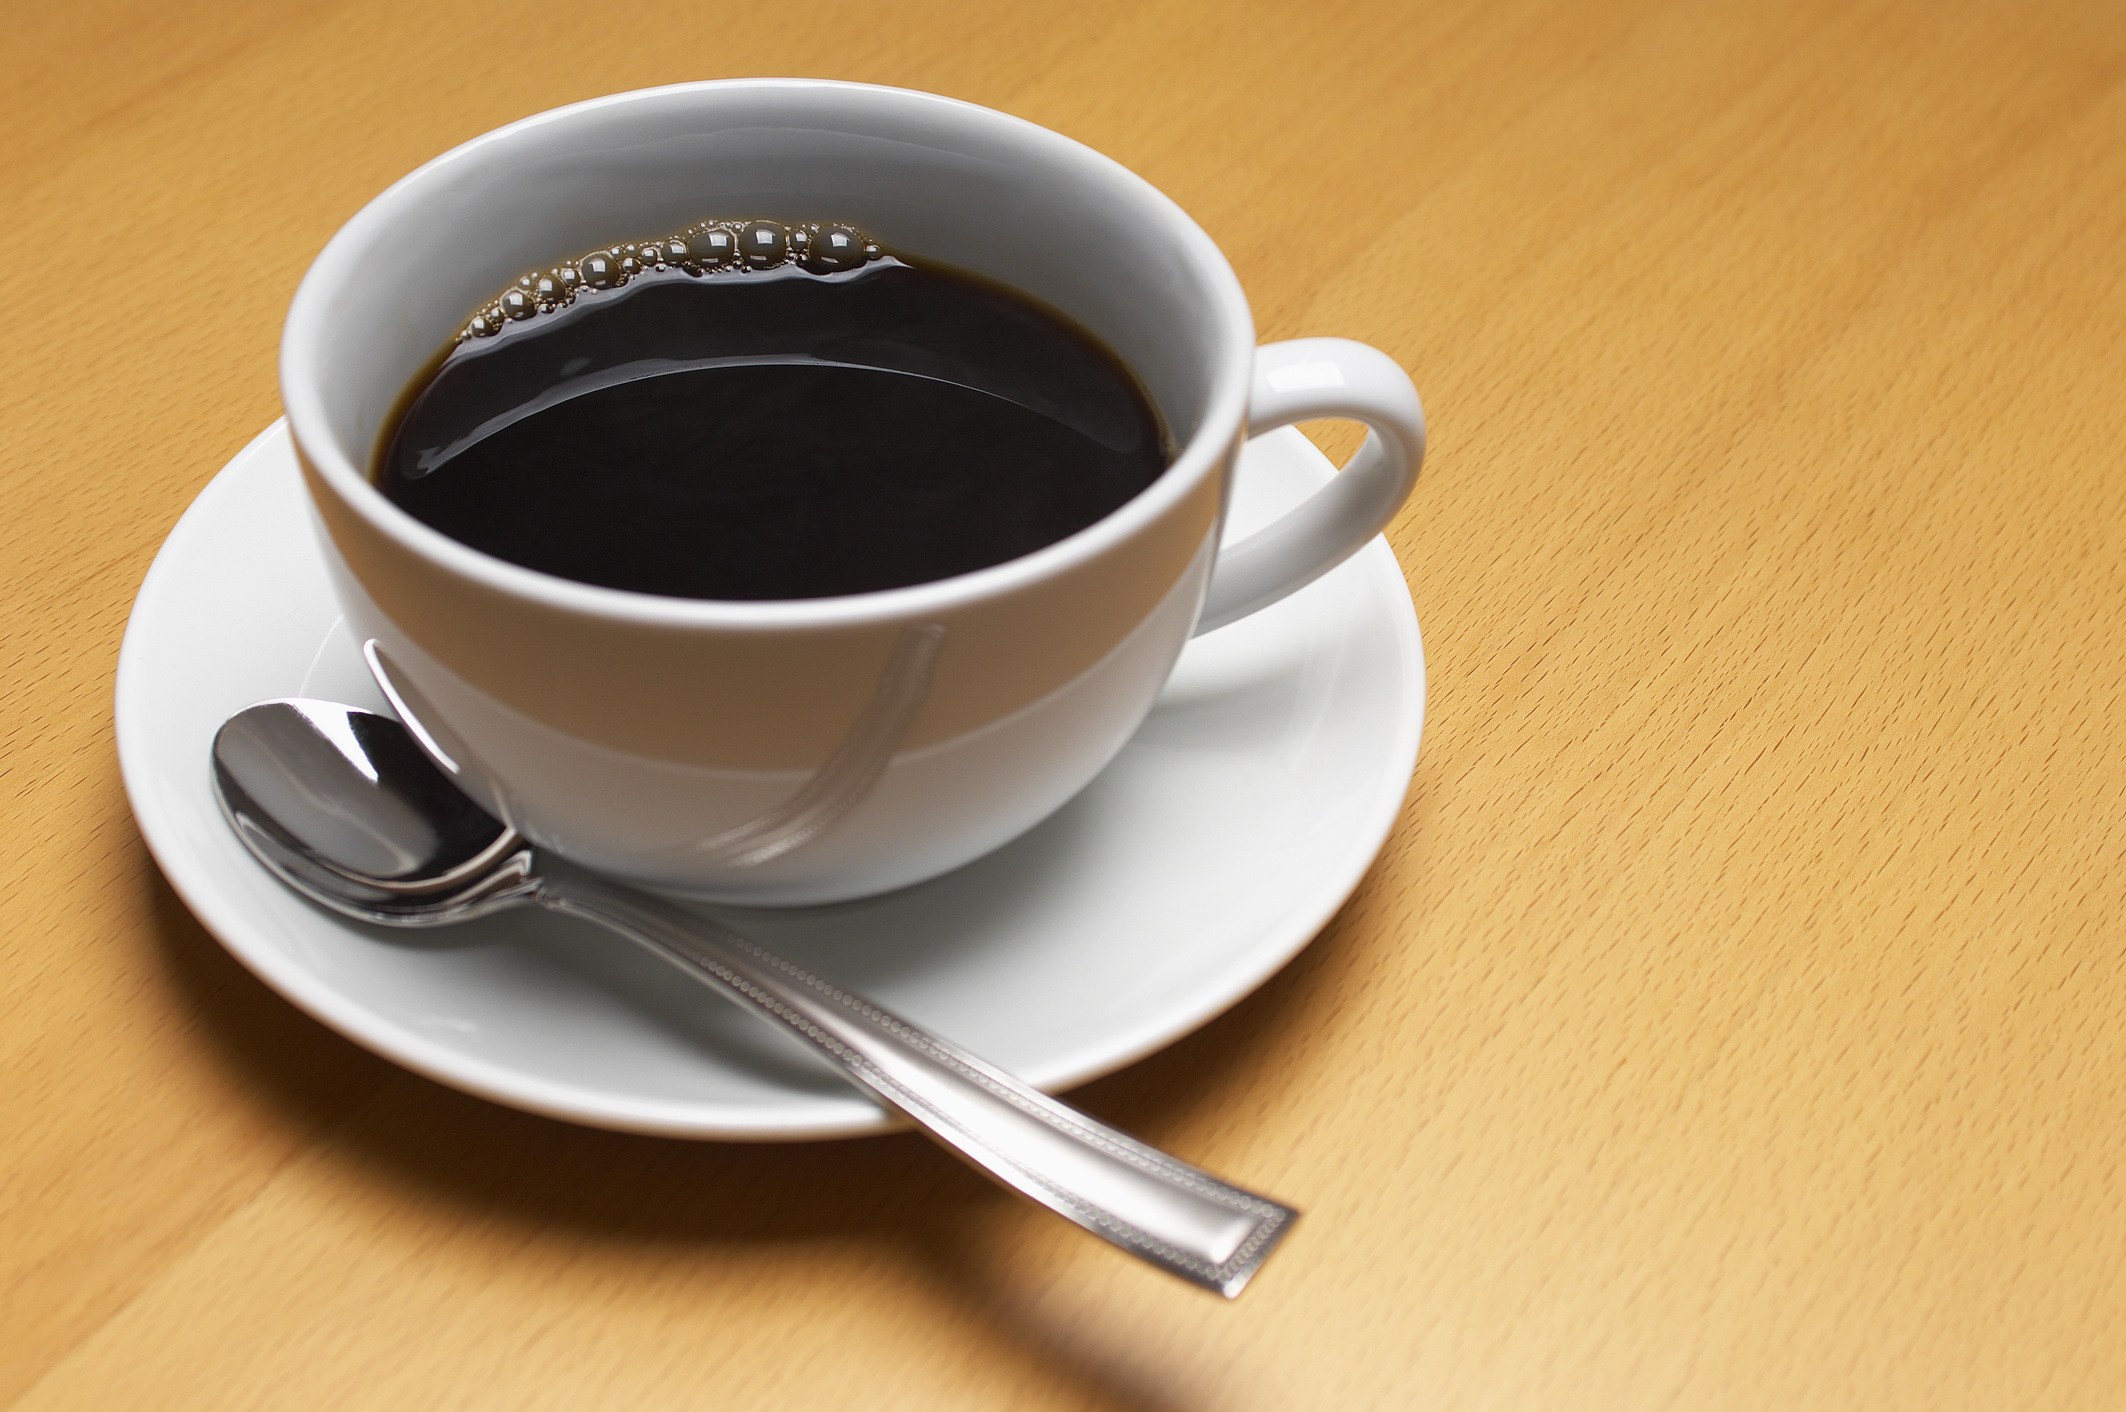 Most kiderült: a rendszeres kávézás jótékony hatással lehet az egészségre -  Blikk